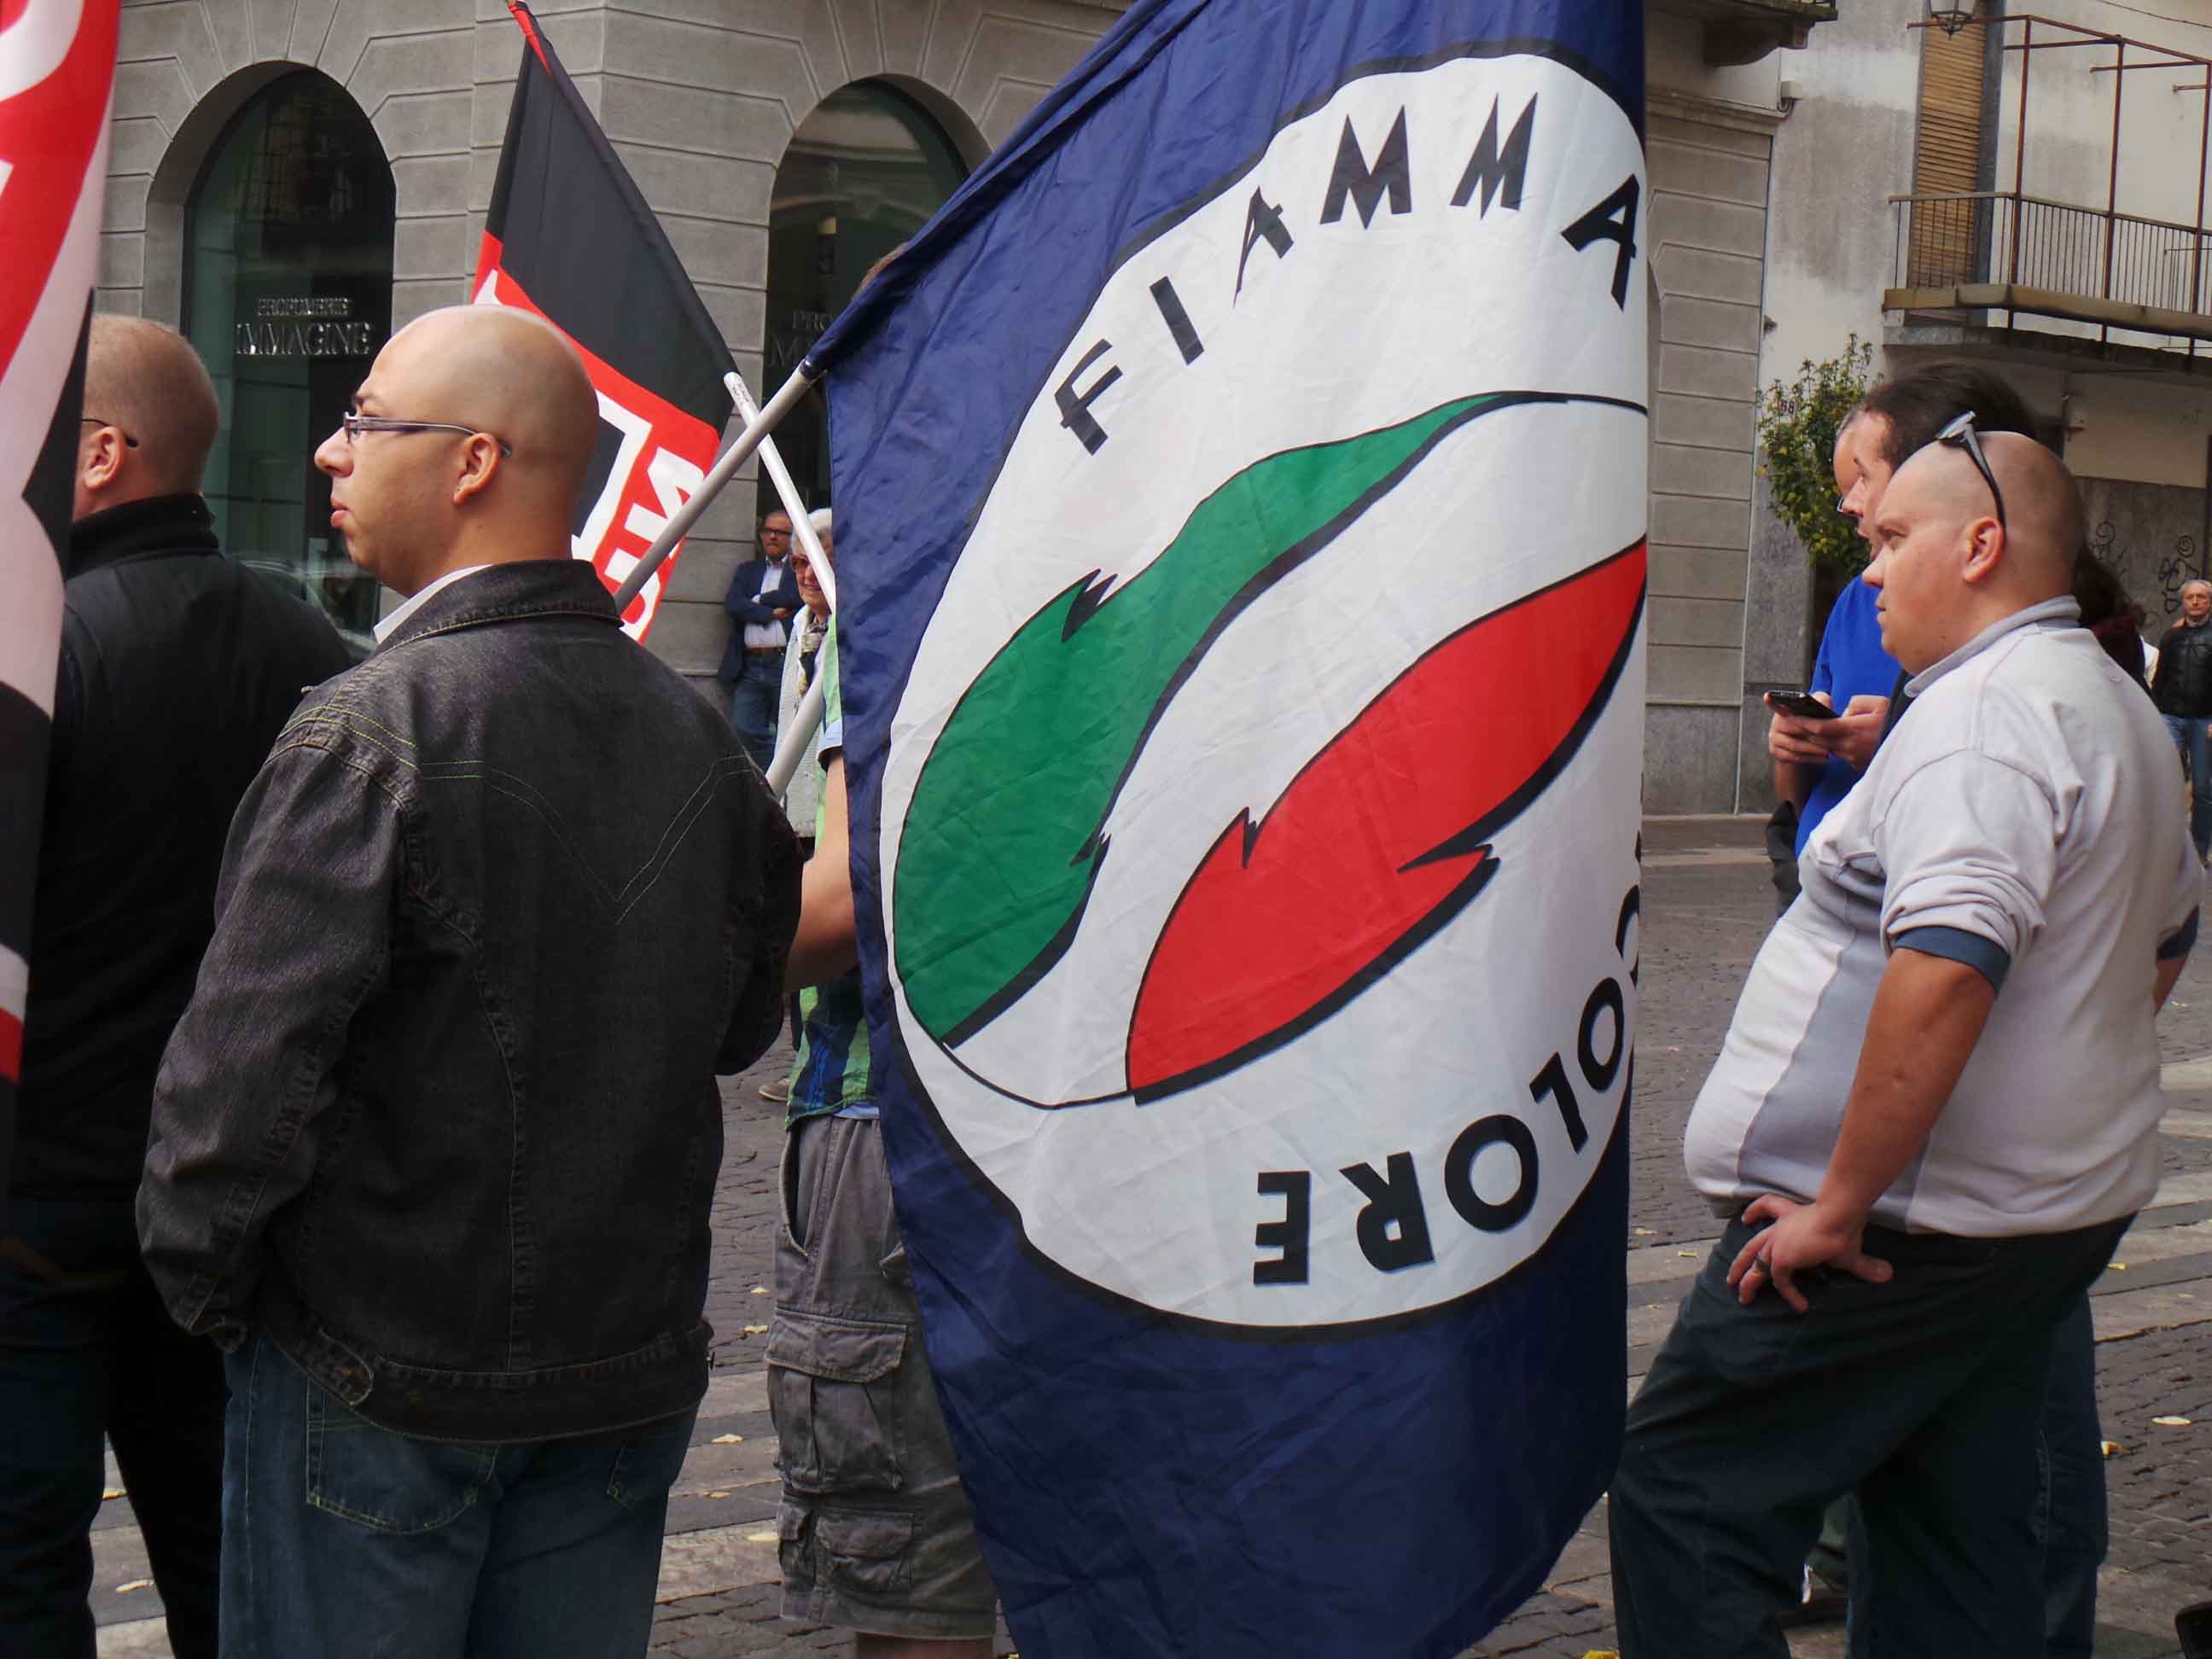 Bernasconi al congresso della Fiamma: “Aiutare gli italiani in difficoltà”